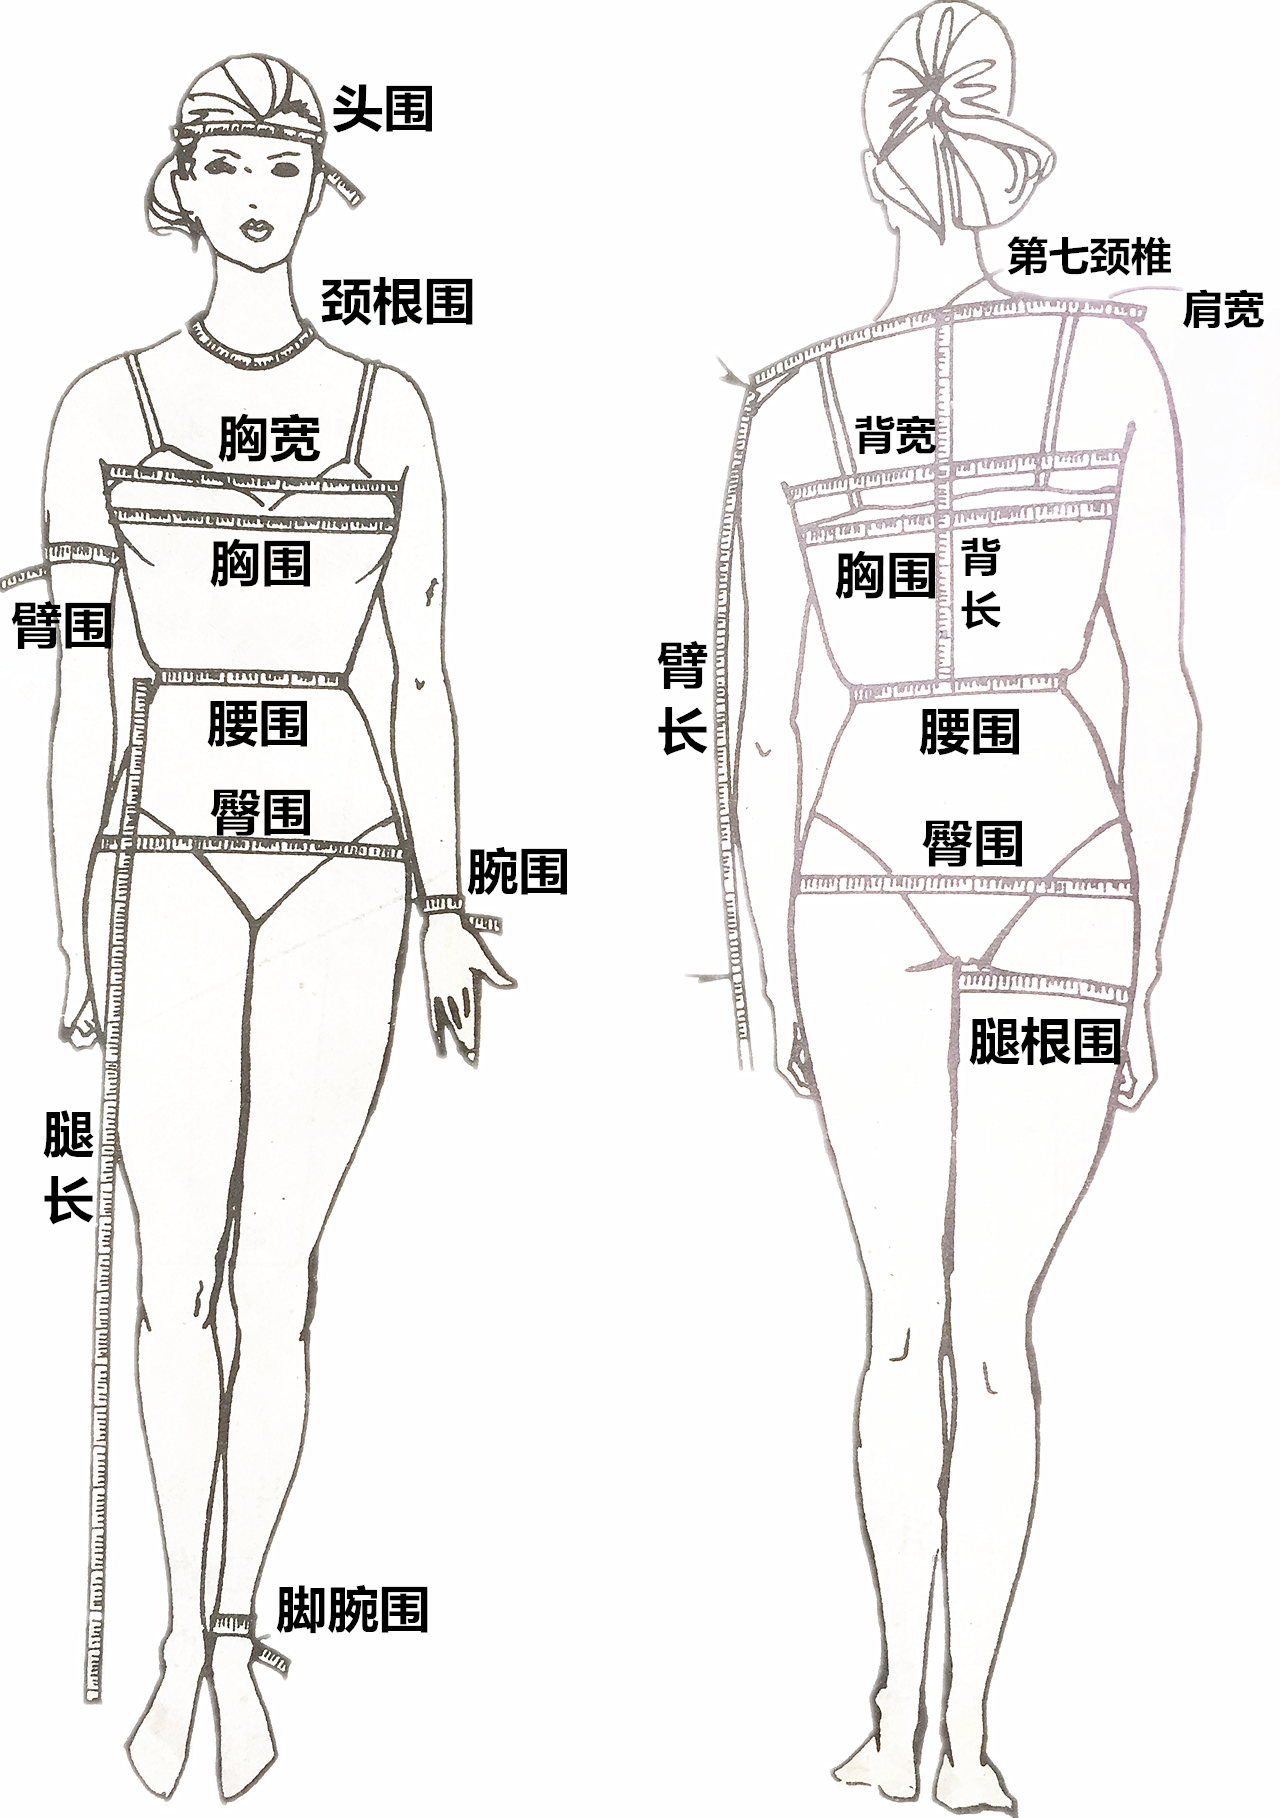 身体围度测量标准图解图片